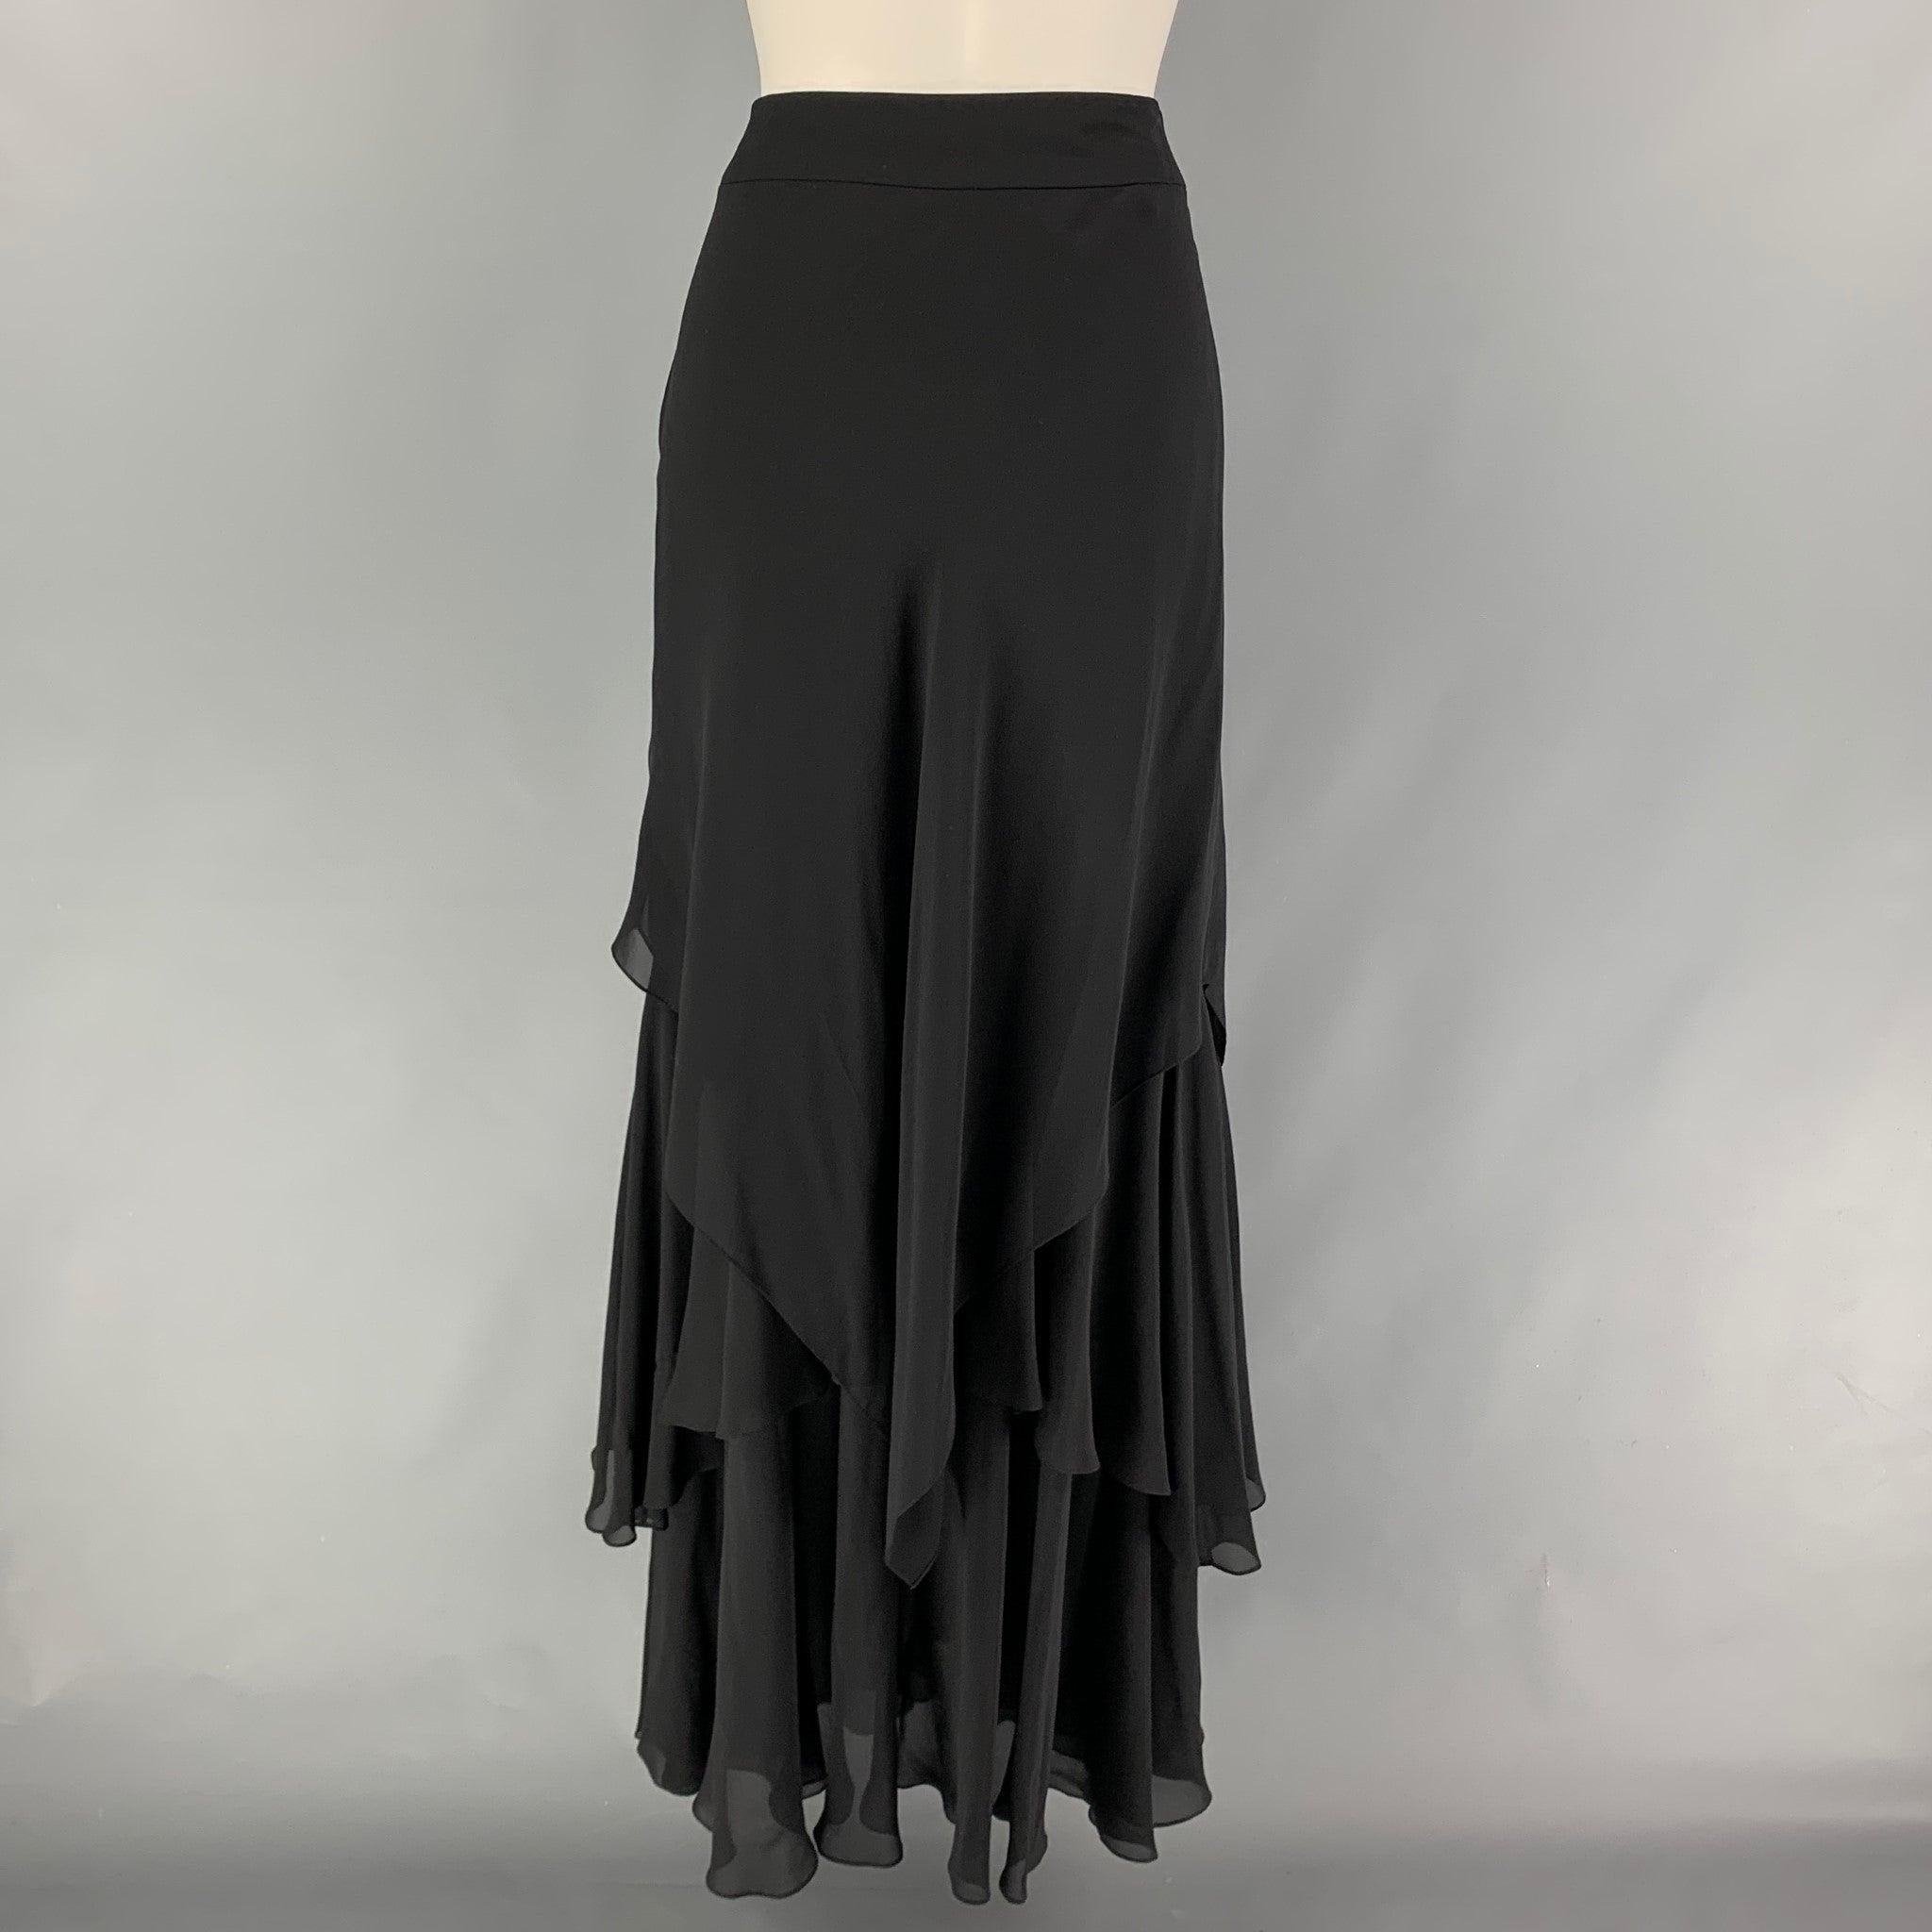 Women's CARMEN MARC VALVO Size 6 Black Ruffled Asymmetrical Long Skirt